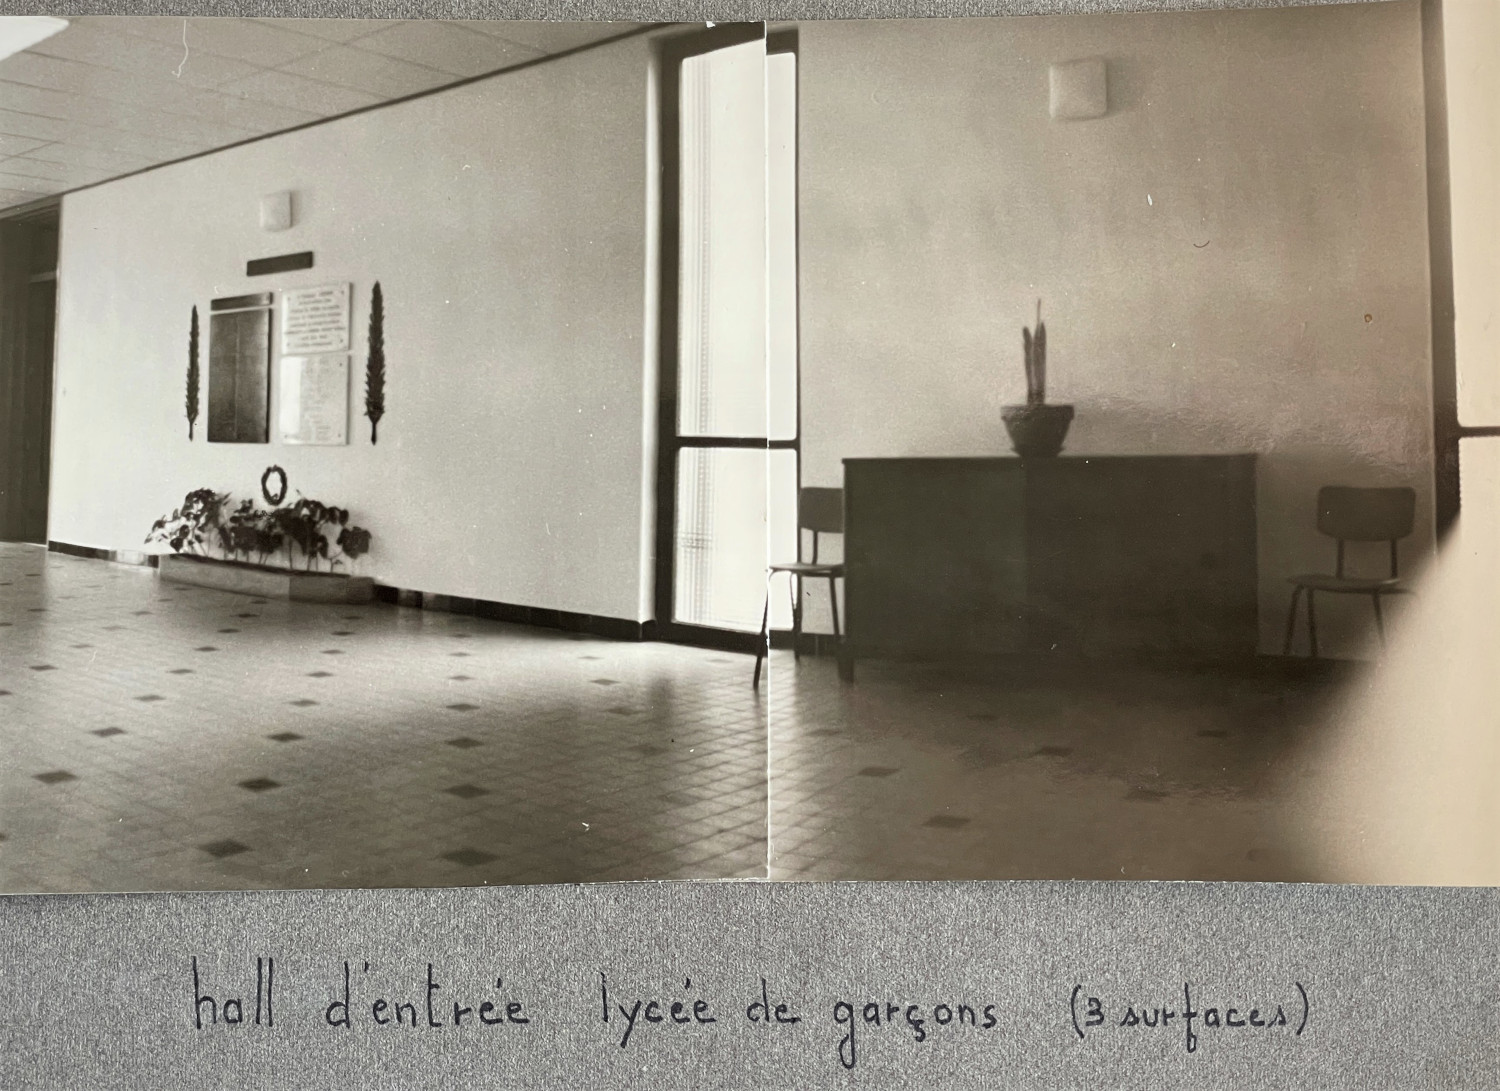 Oeuvres du 1% artistique du lycée La Fayette de Brioude : une sculpture et deux panneaux muraux